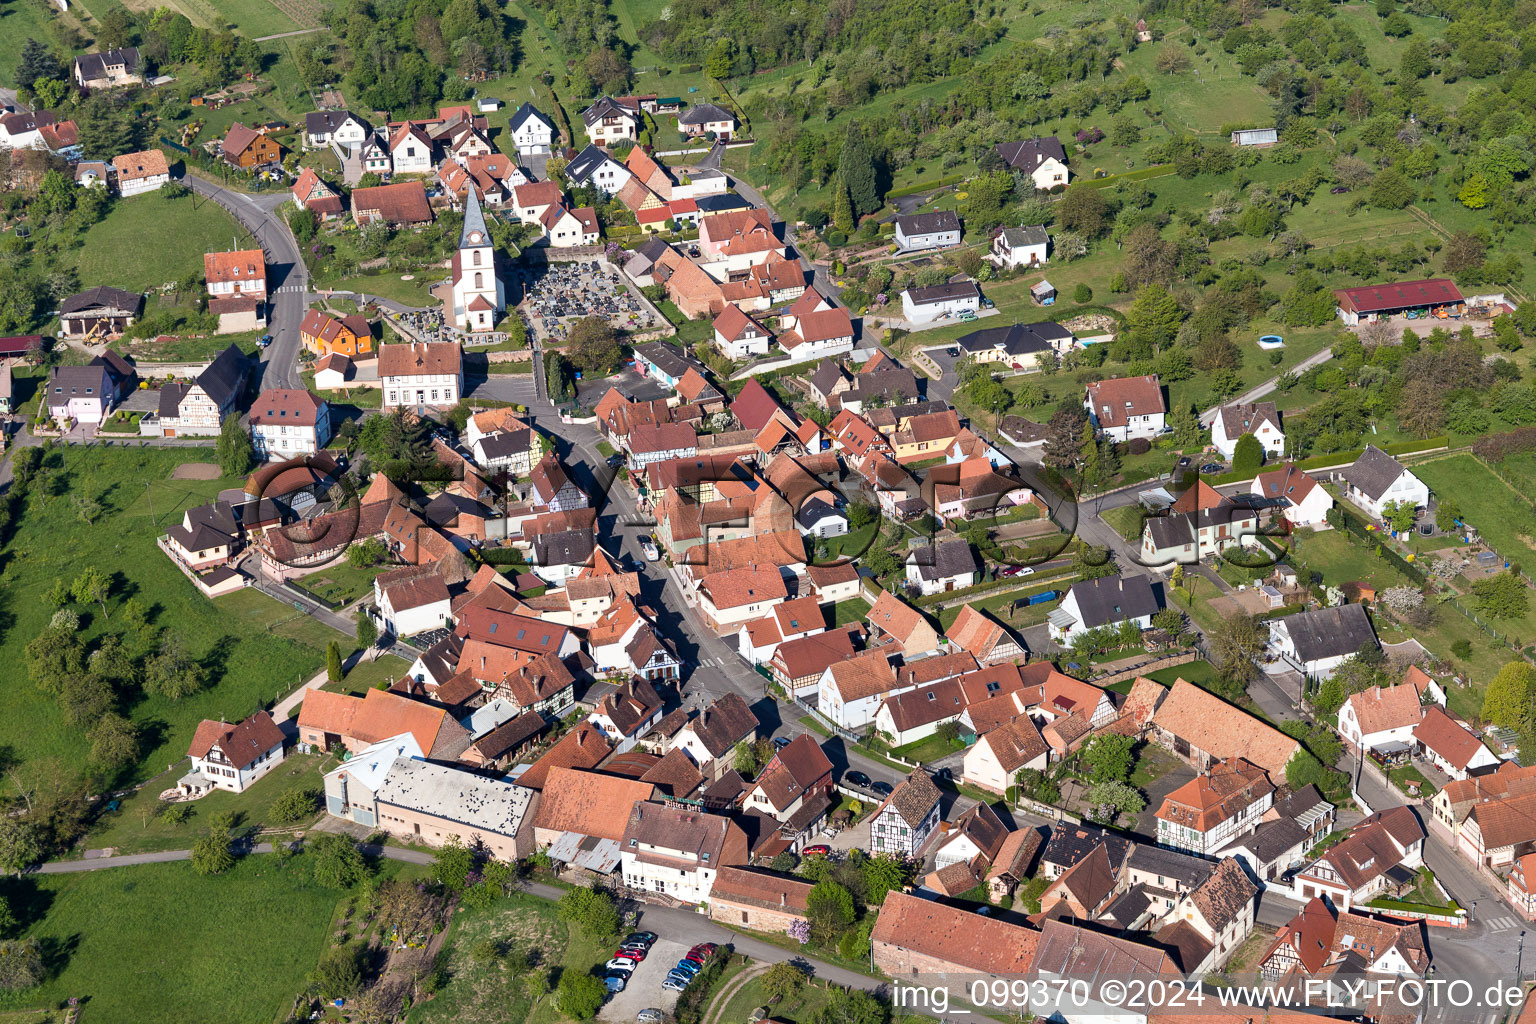 Luftbild von Dorf - Ansicht in Morsbronn-les-Bains in Grand Est im Bundesland Bas-Rhin, Frankreich